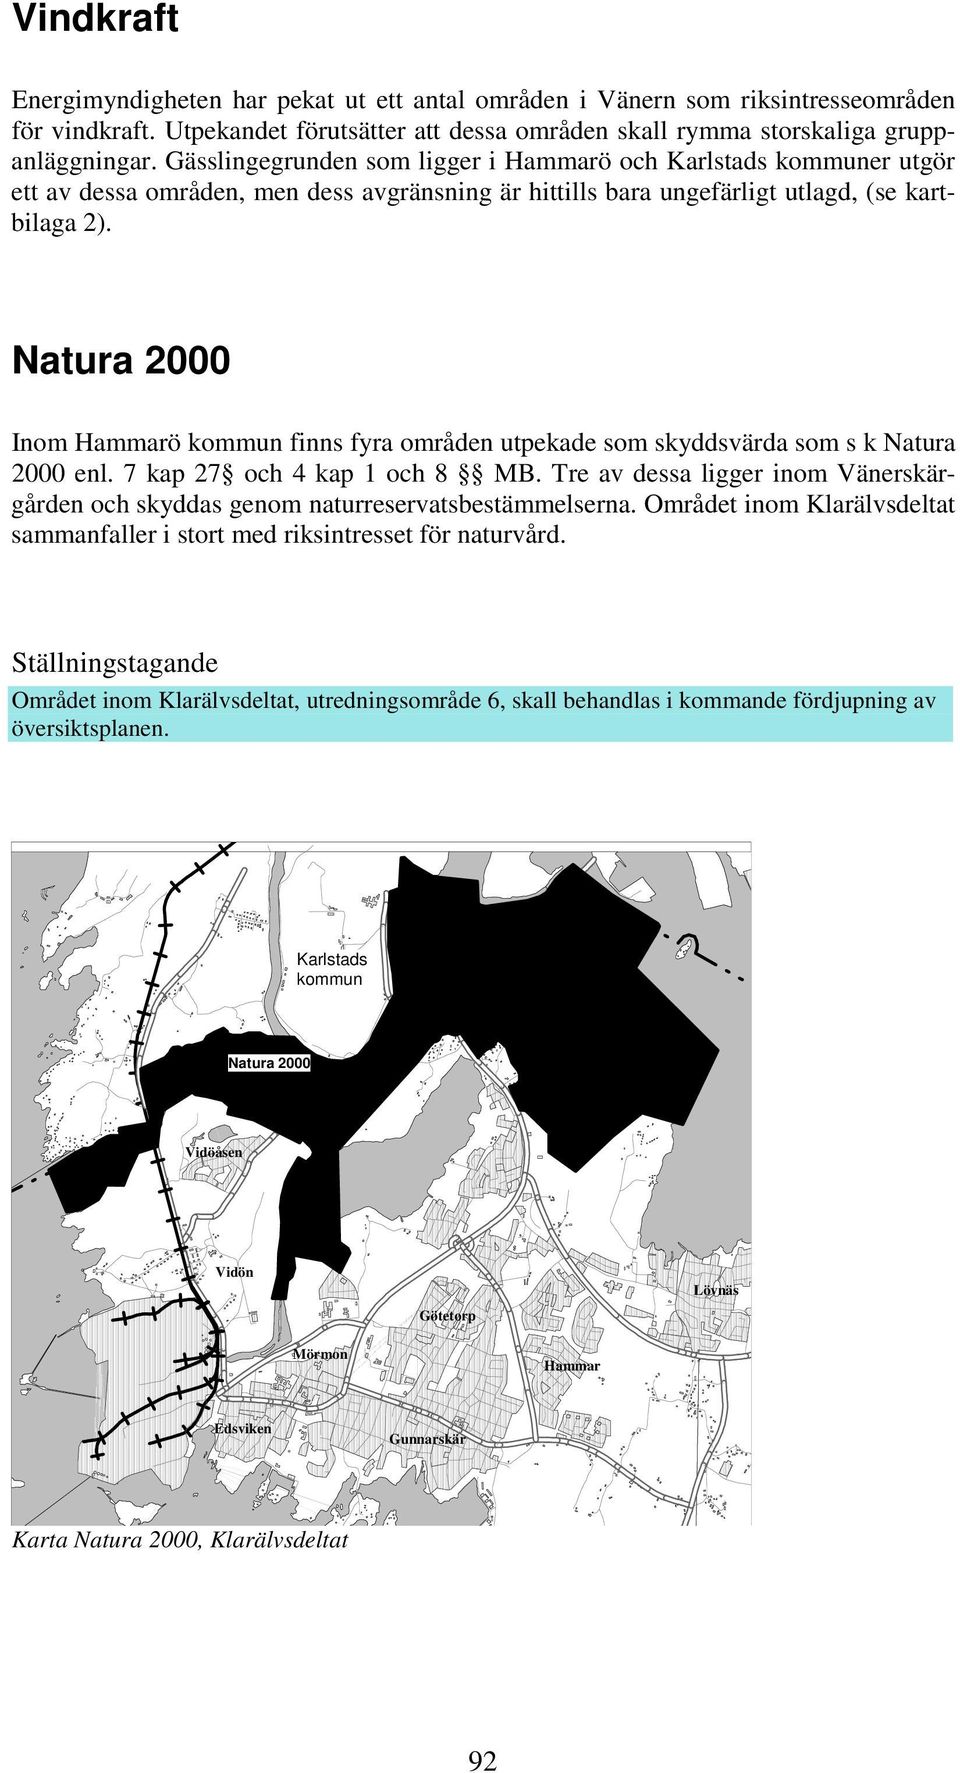 Natura 2000 Inom Hammarö kommun finns fyra områden utpekade som skyddsvärda som s k Natura 2000 enl. 7 kap 27 och 4 kap 1 och 8 MB.